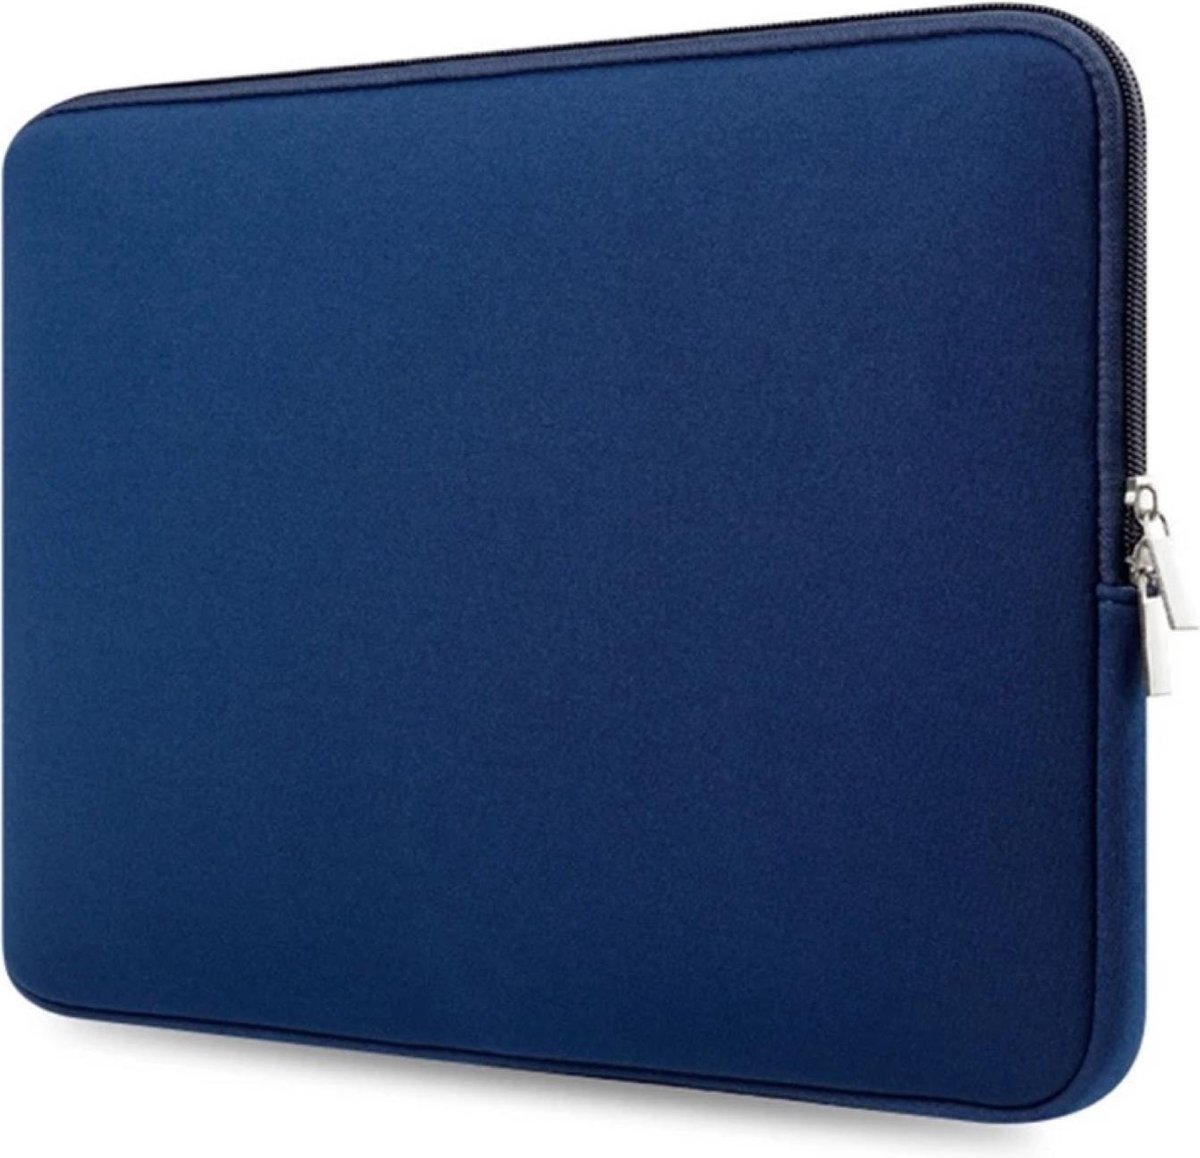 Laptop Sleeve voor Dell Vostro - laptop hoes - Met Ritssluiting - sleeve - spatwaterbestendig - extra bescherming - 14,6 inch ( Blauw )